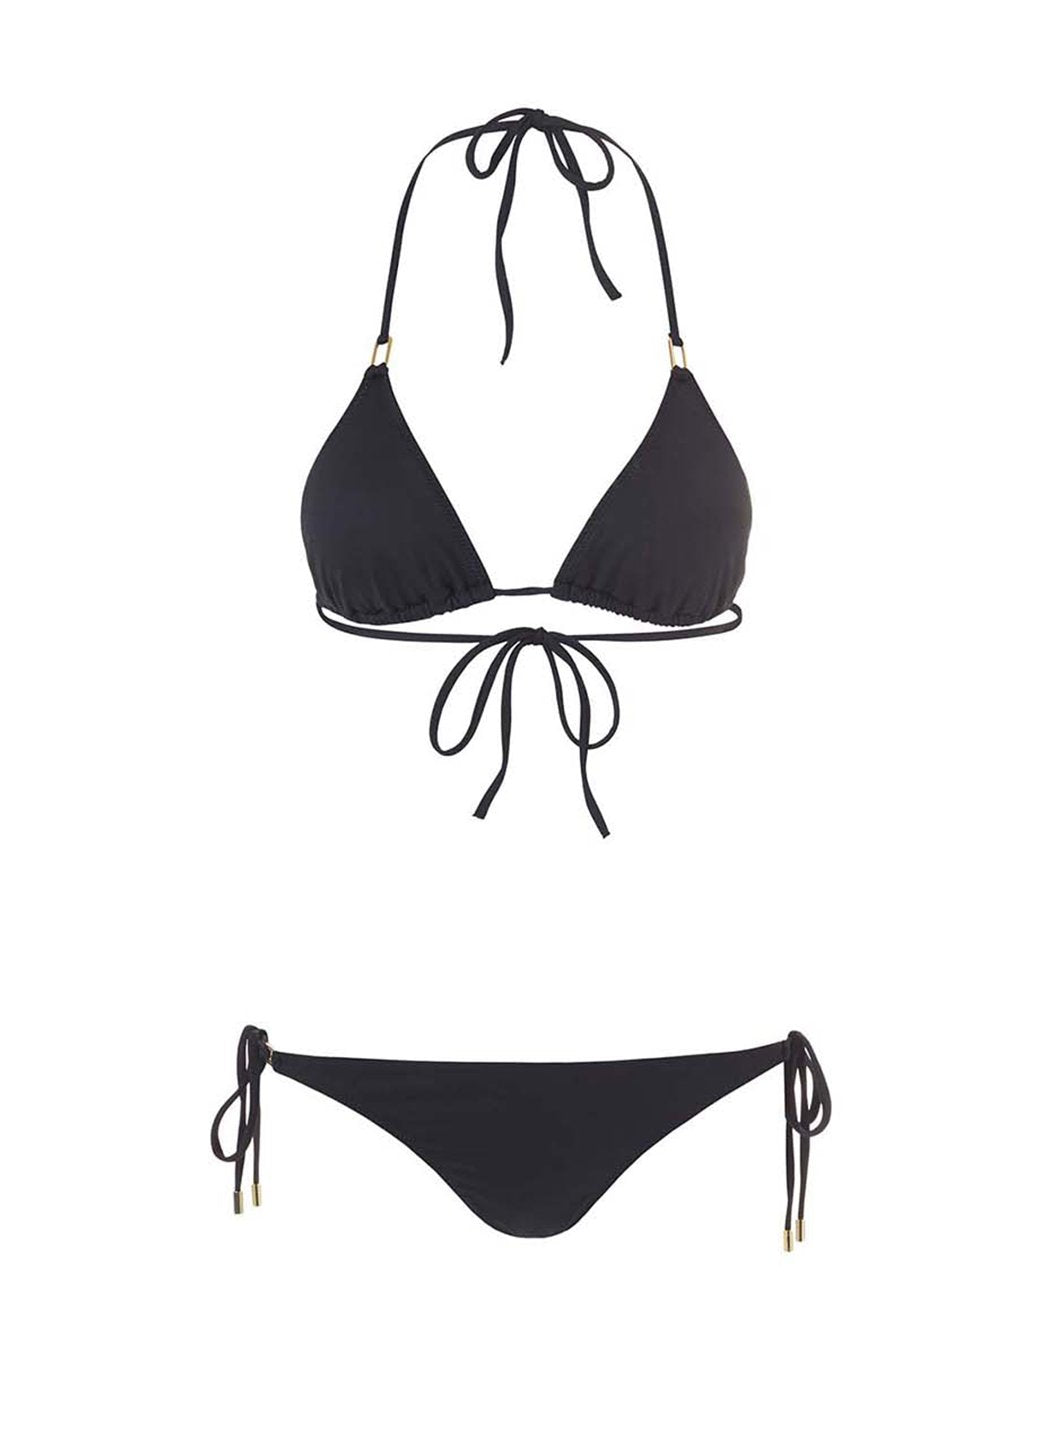 Exclusive Cancun Black Bikini Top